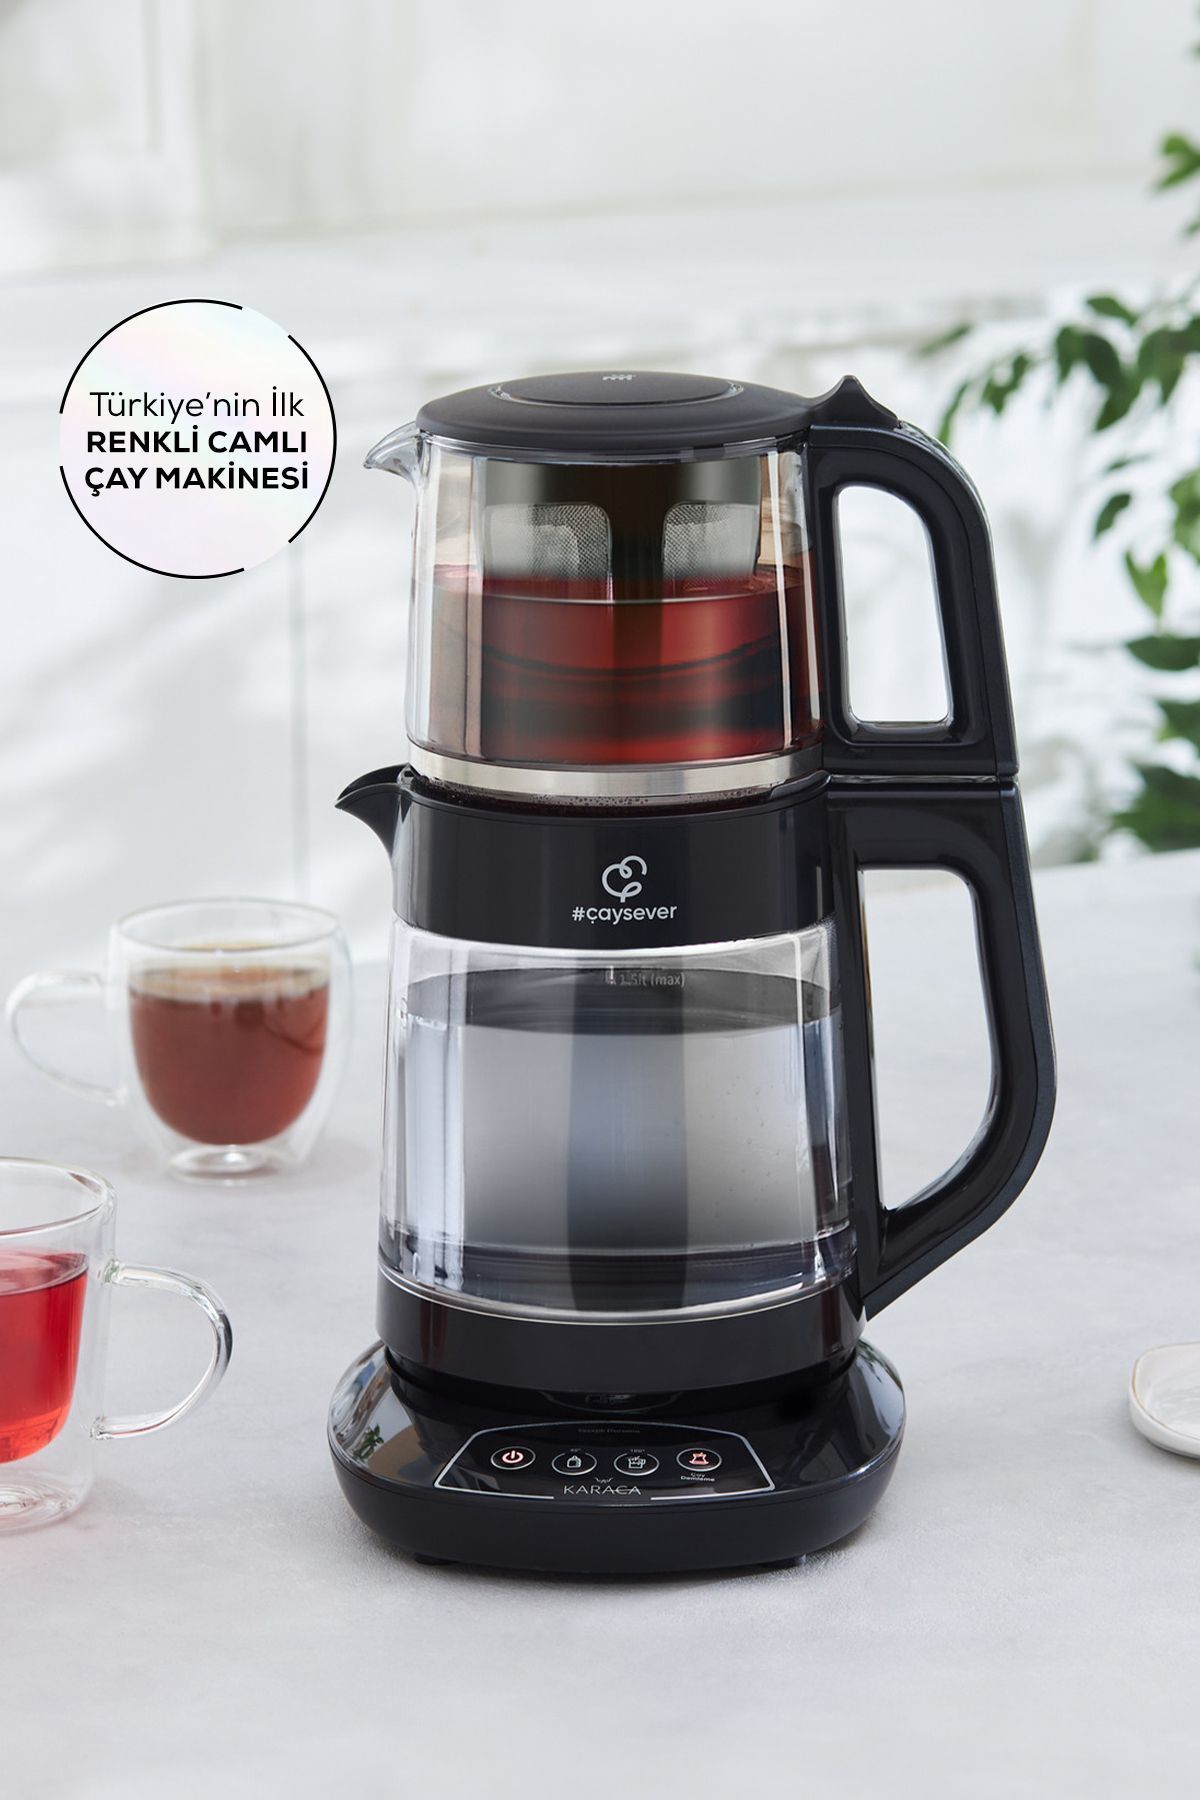 Karaca Çaysever 3 in 1 Konuşan Renkli Camlı Çay Makinesi Graphite